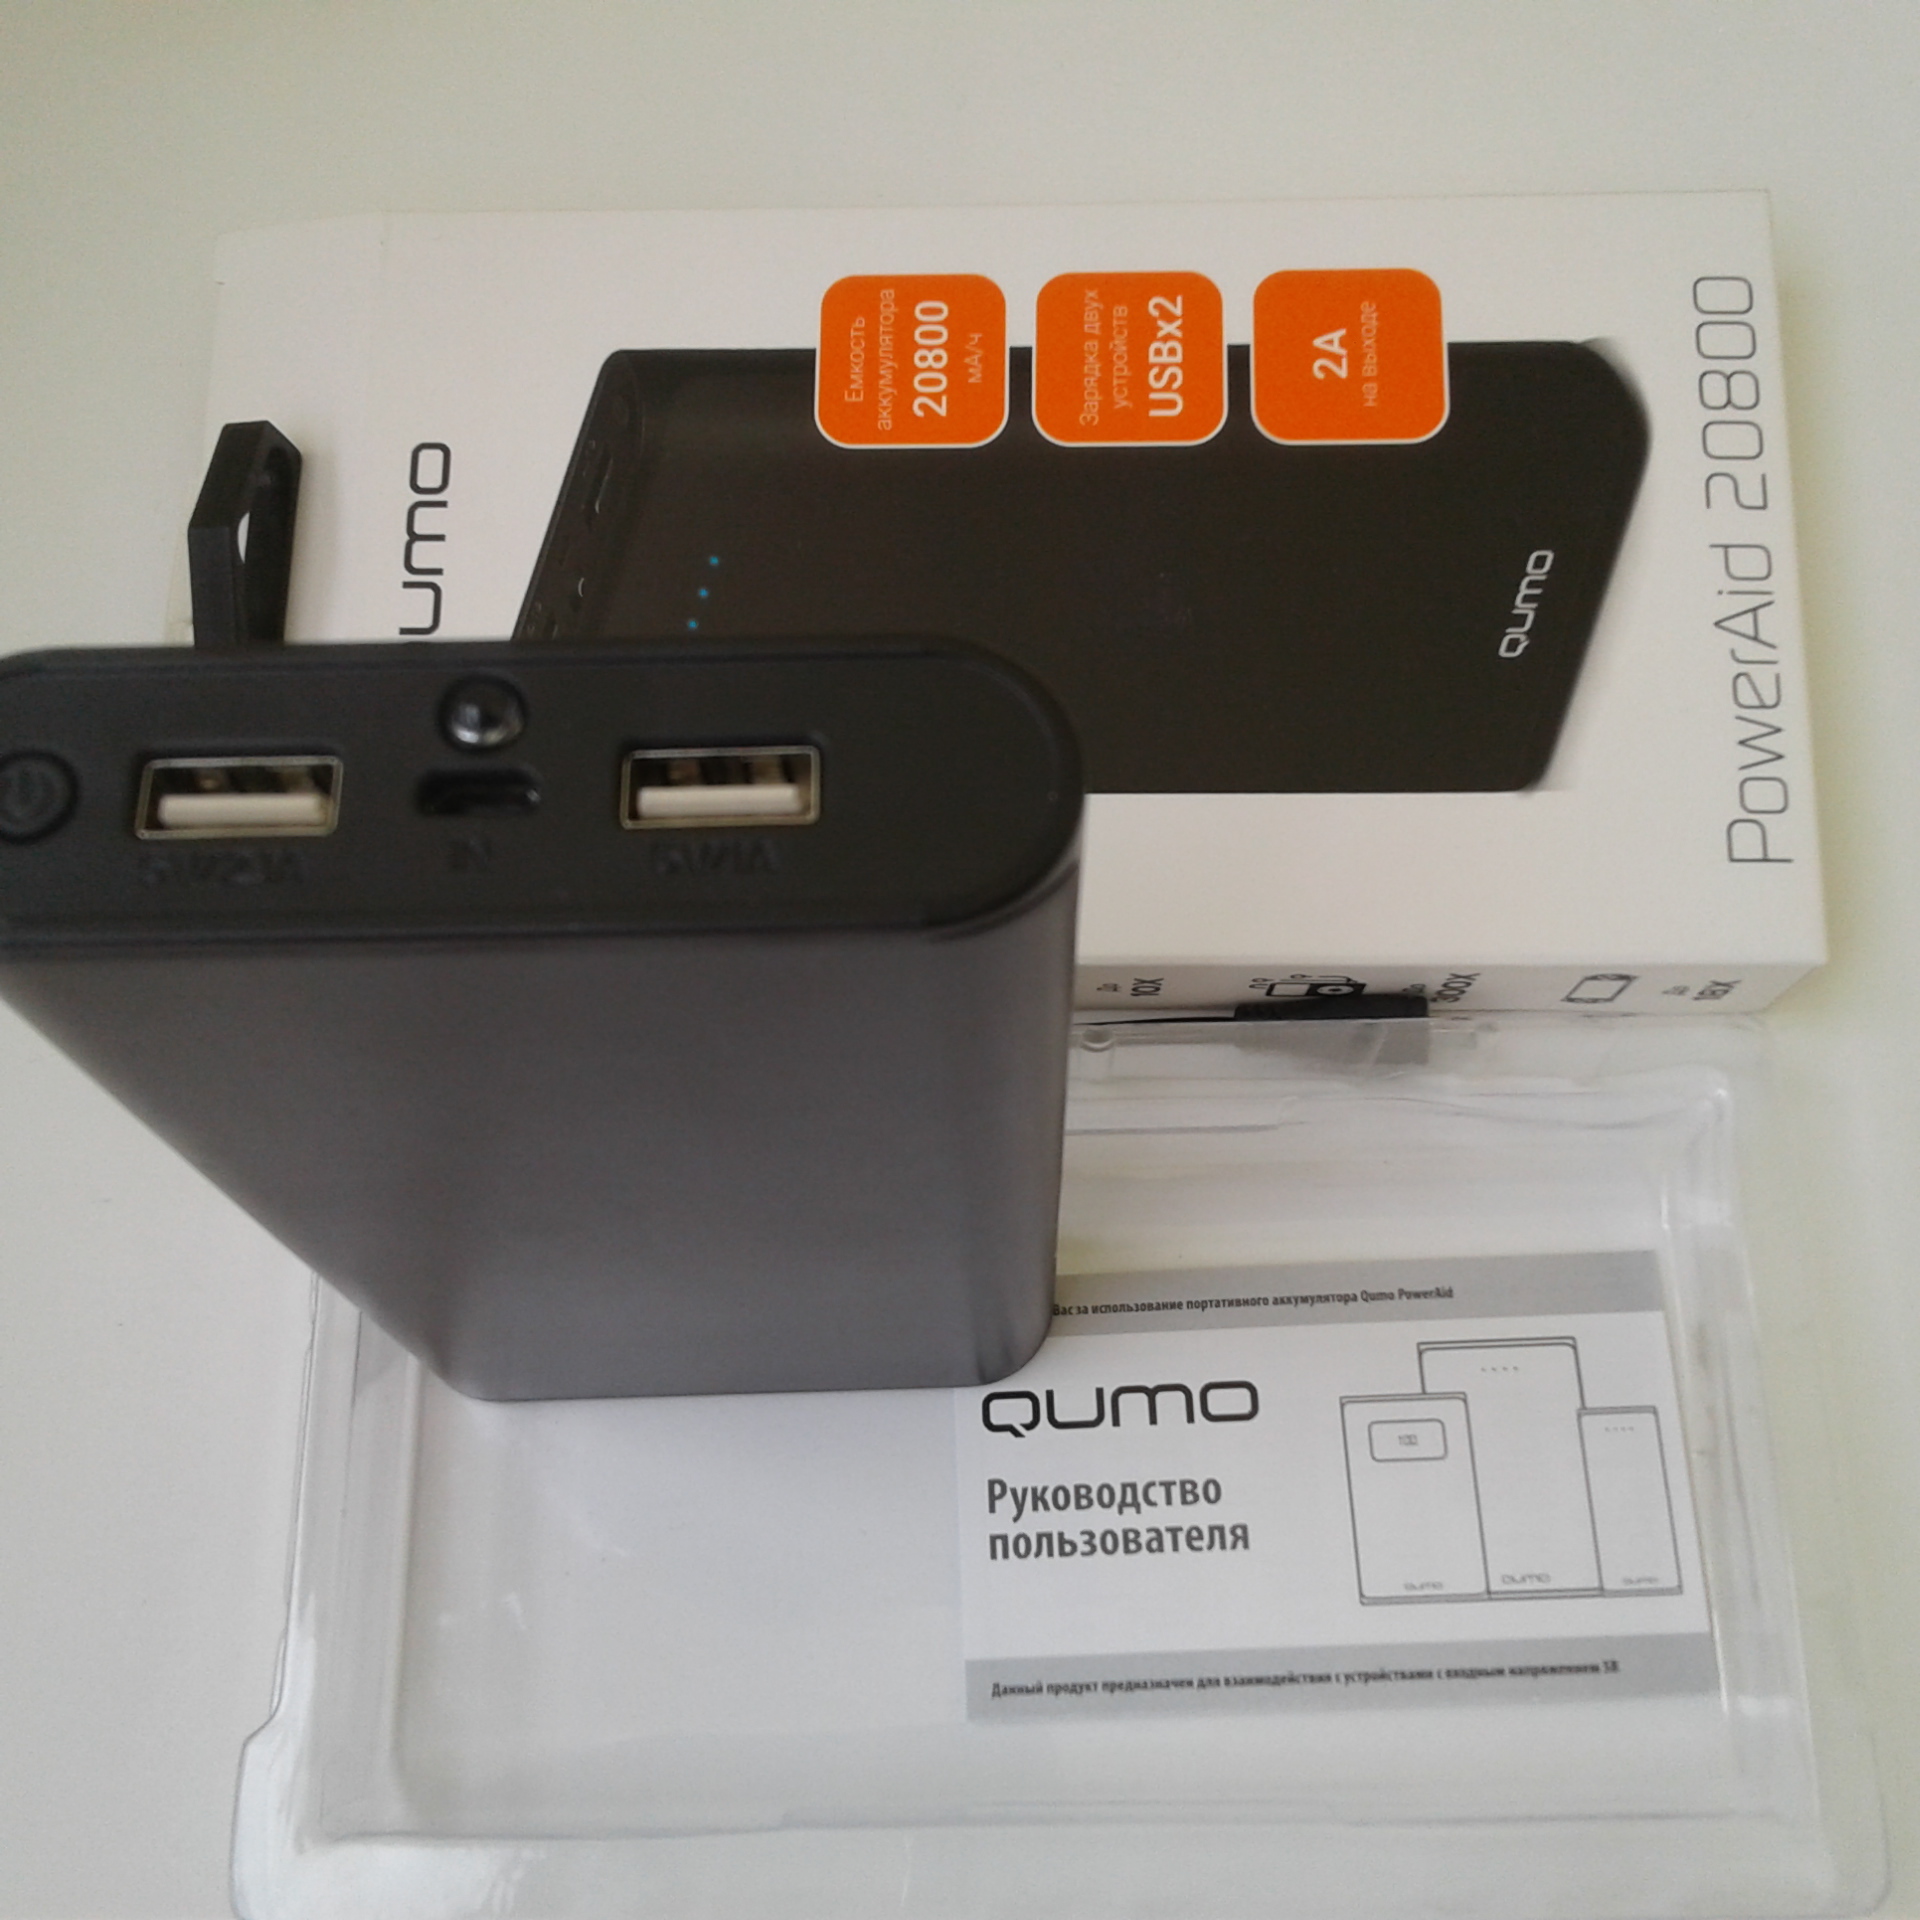 Внешний аккумулятор QUMO PowerAid 20800